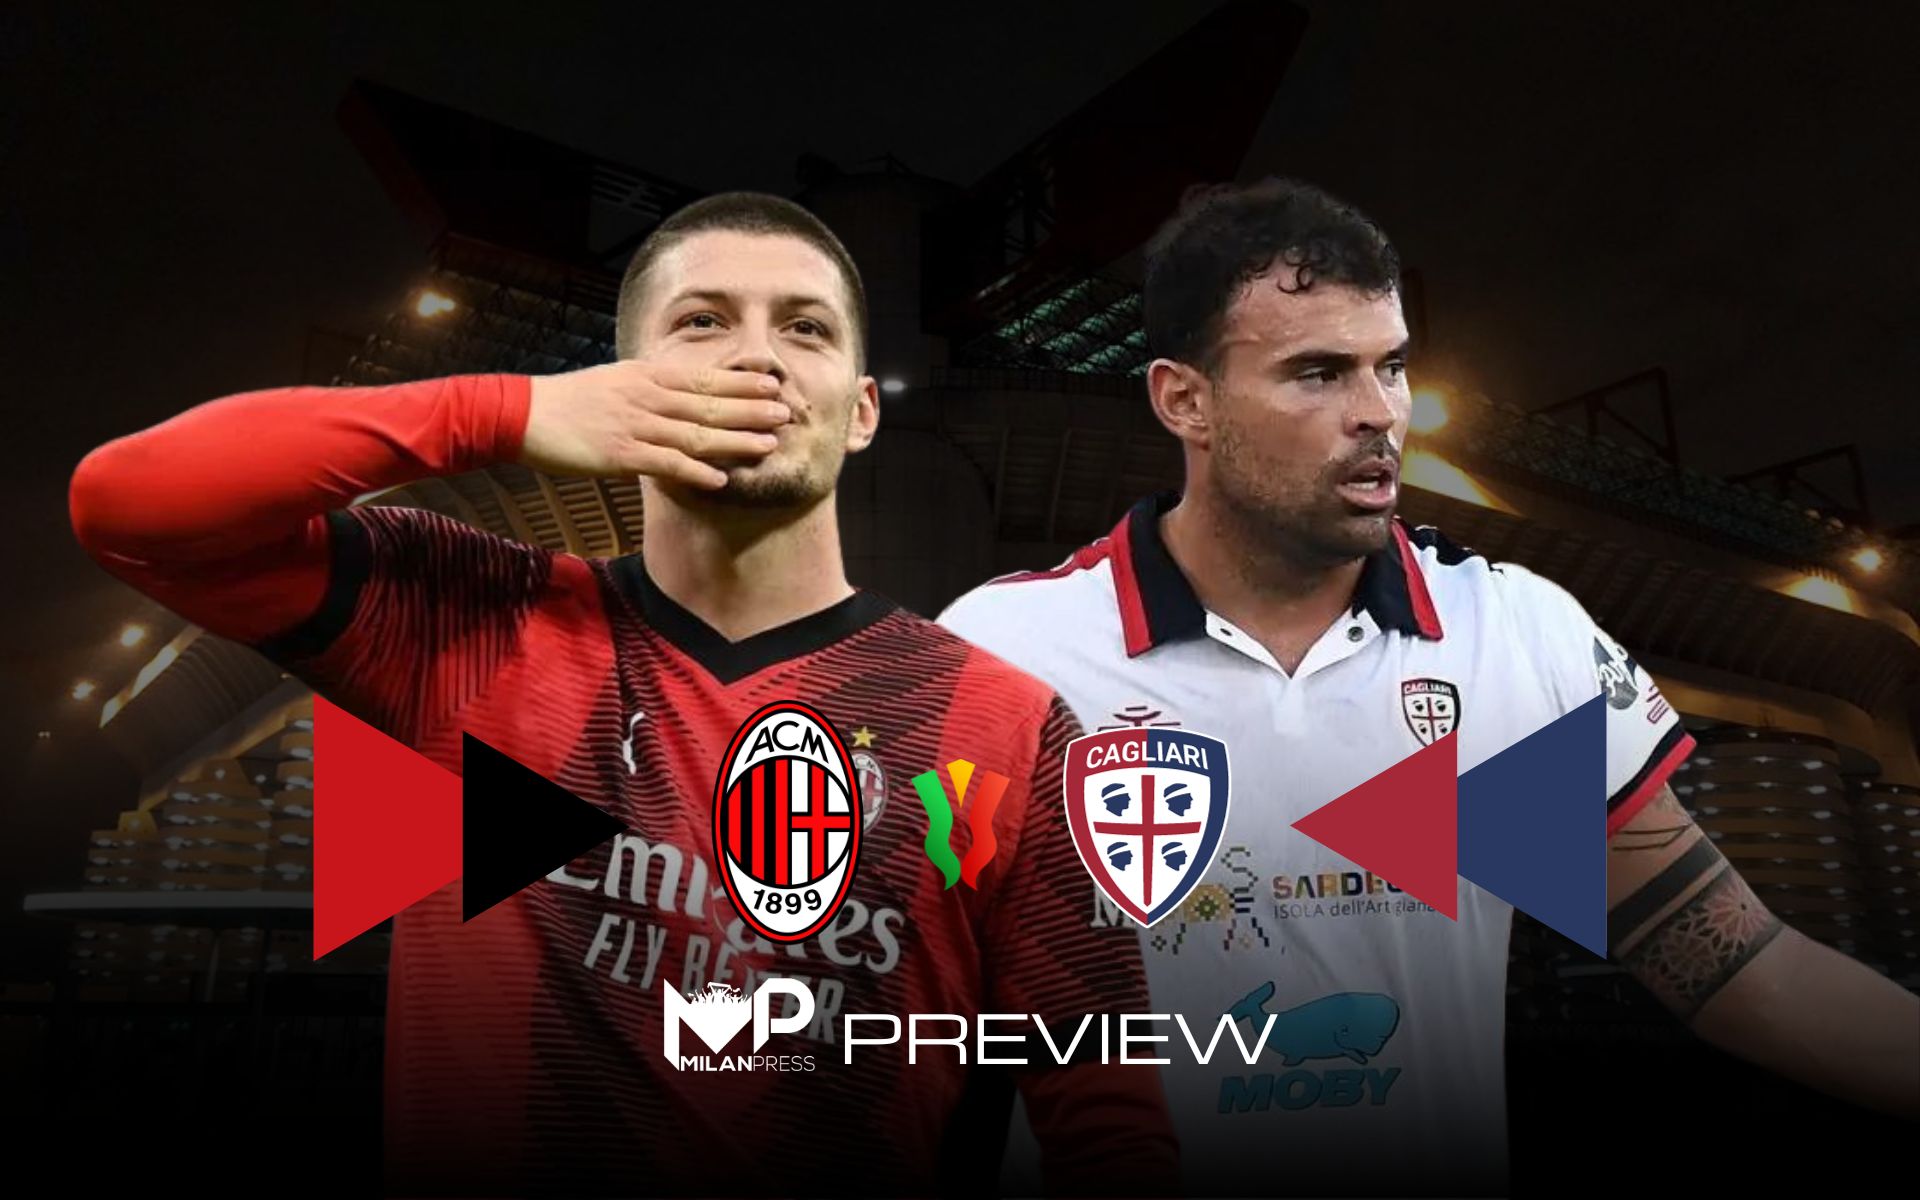 Milan-Cagliari Coppa Italia Preview - MilanPress, robe dell'altro diavolo